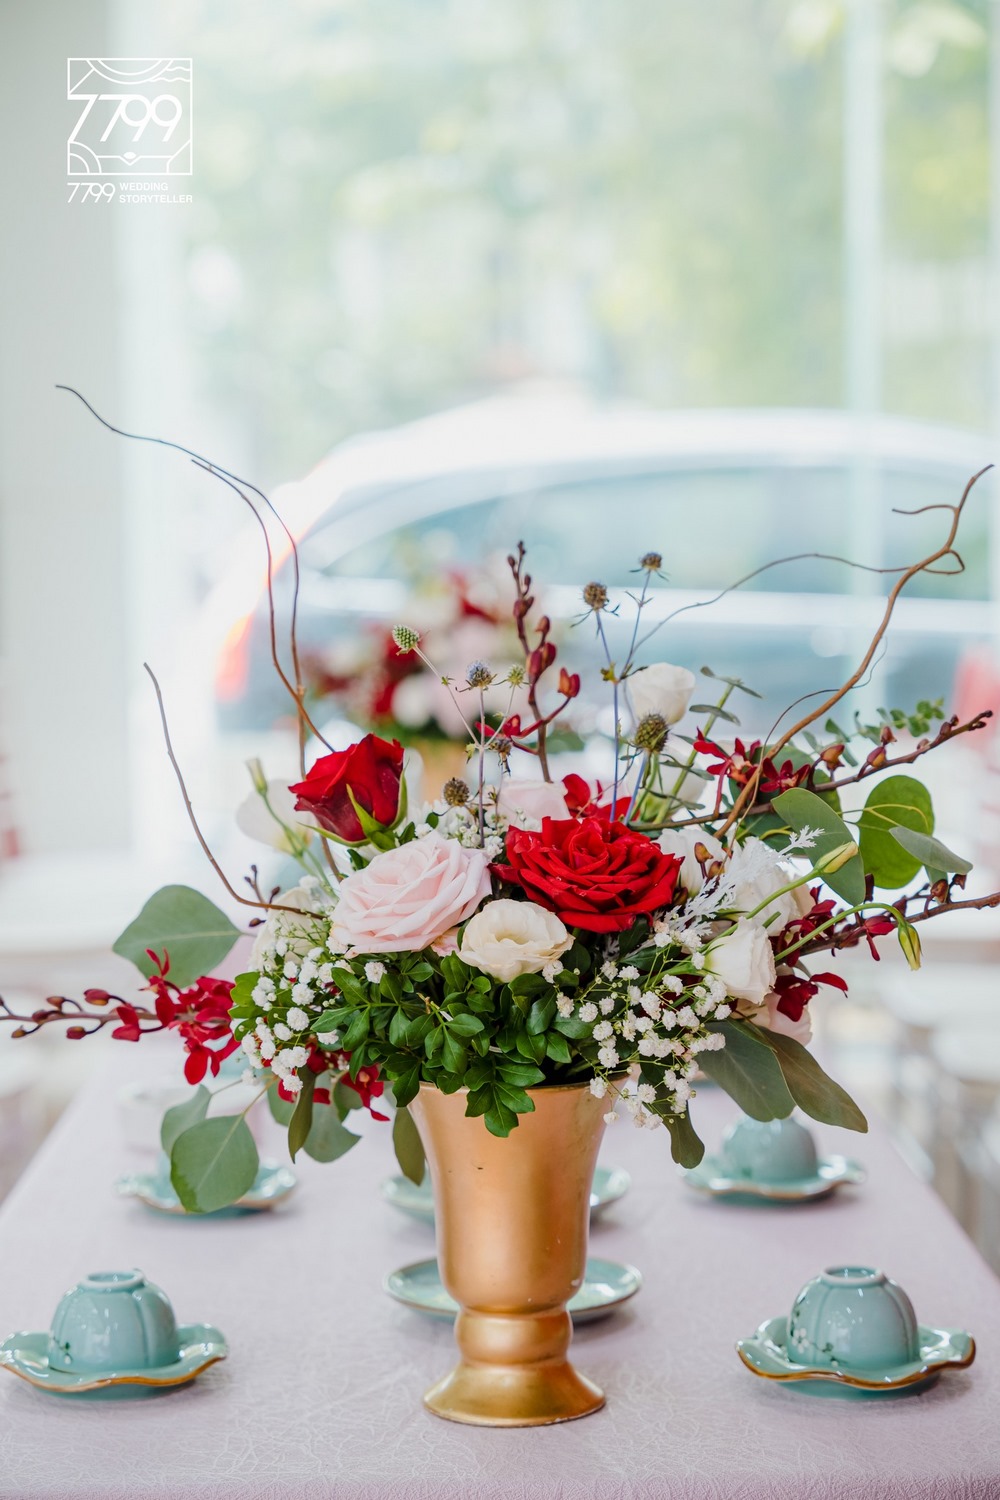 Hoa để bàn Đám cưới 2021 màu đỏ truyền thống kết hợp với hiện đại